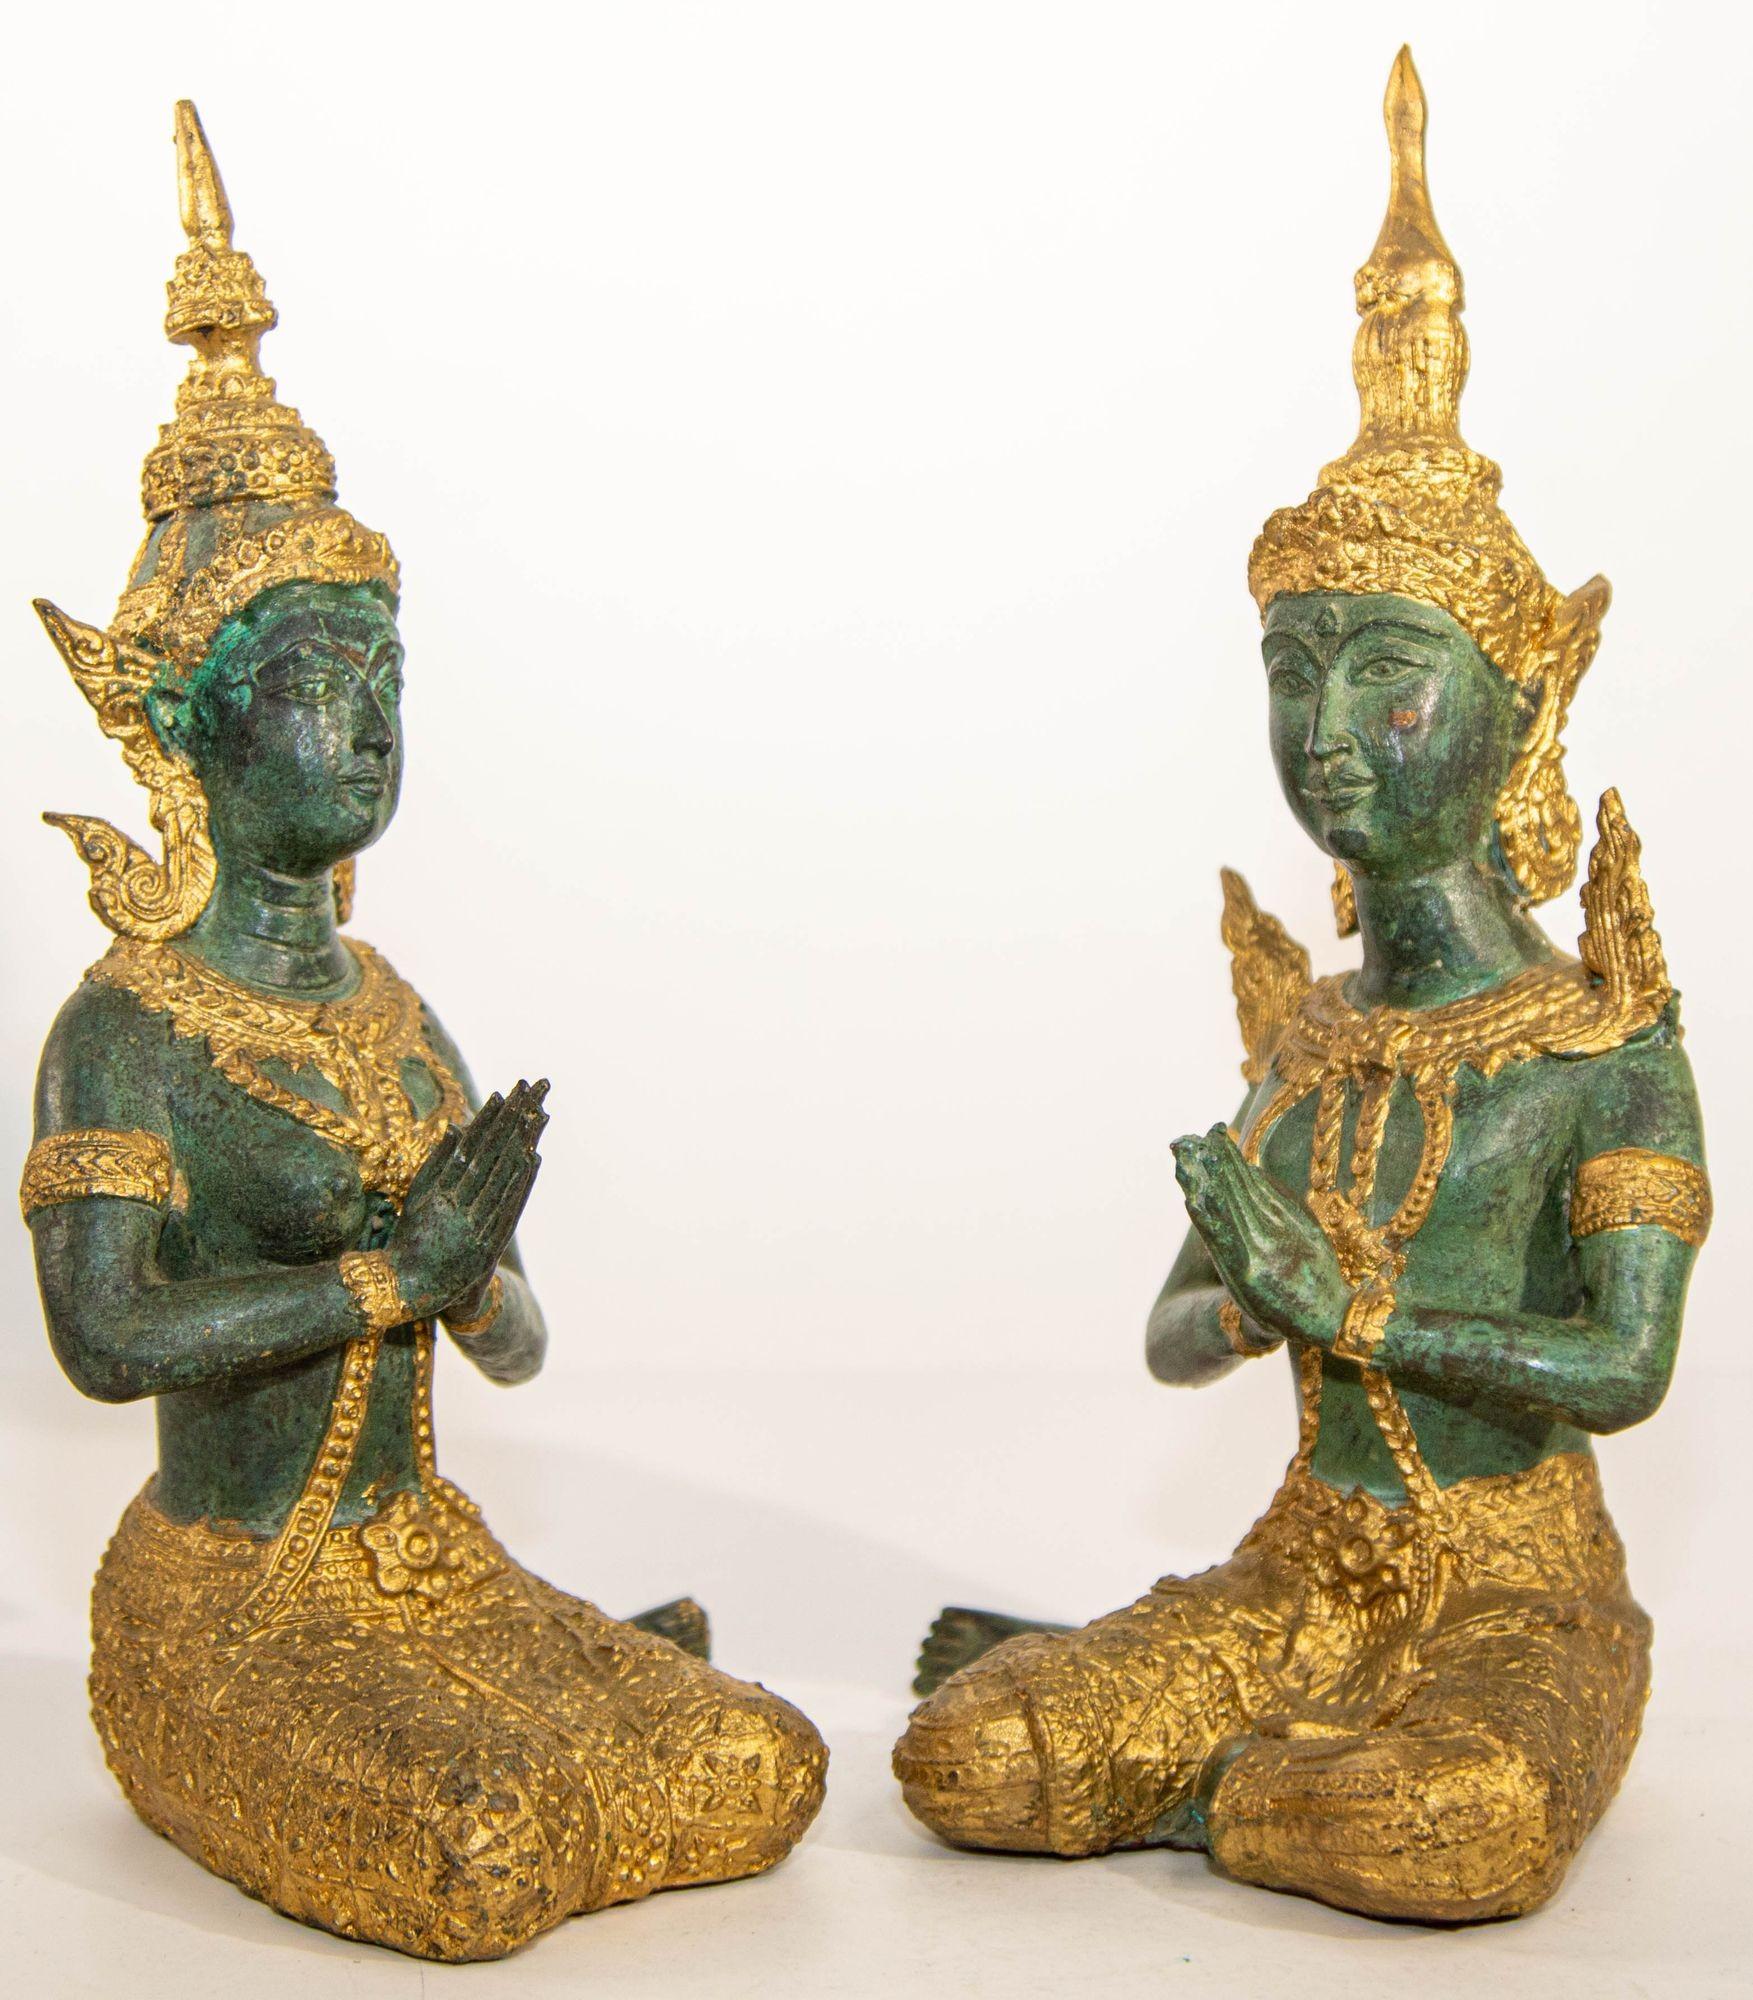 Zwei asiatische vergoldete Bronze Teppanom kniend Thai heiligen Engeln.
Vergoldete Tempelwächter aus Bronze in sitzender Position. Diese Tempelwächter wurden in Thailand hergestellt.
Vergoldete kniende thailändische buddhistische Torwächter